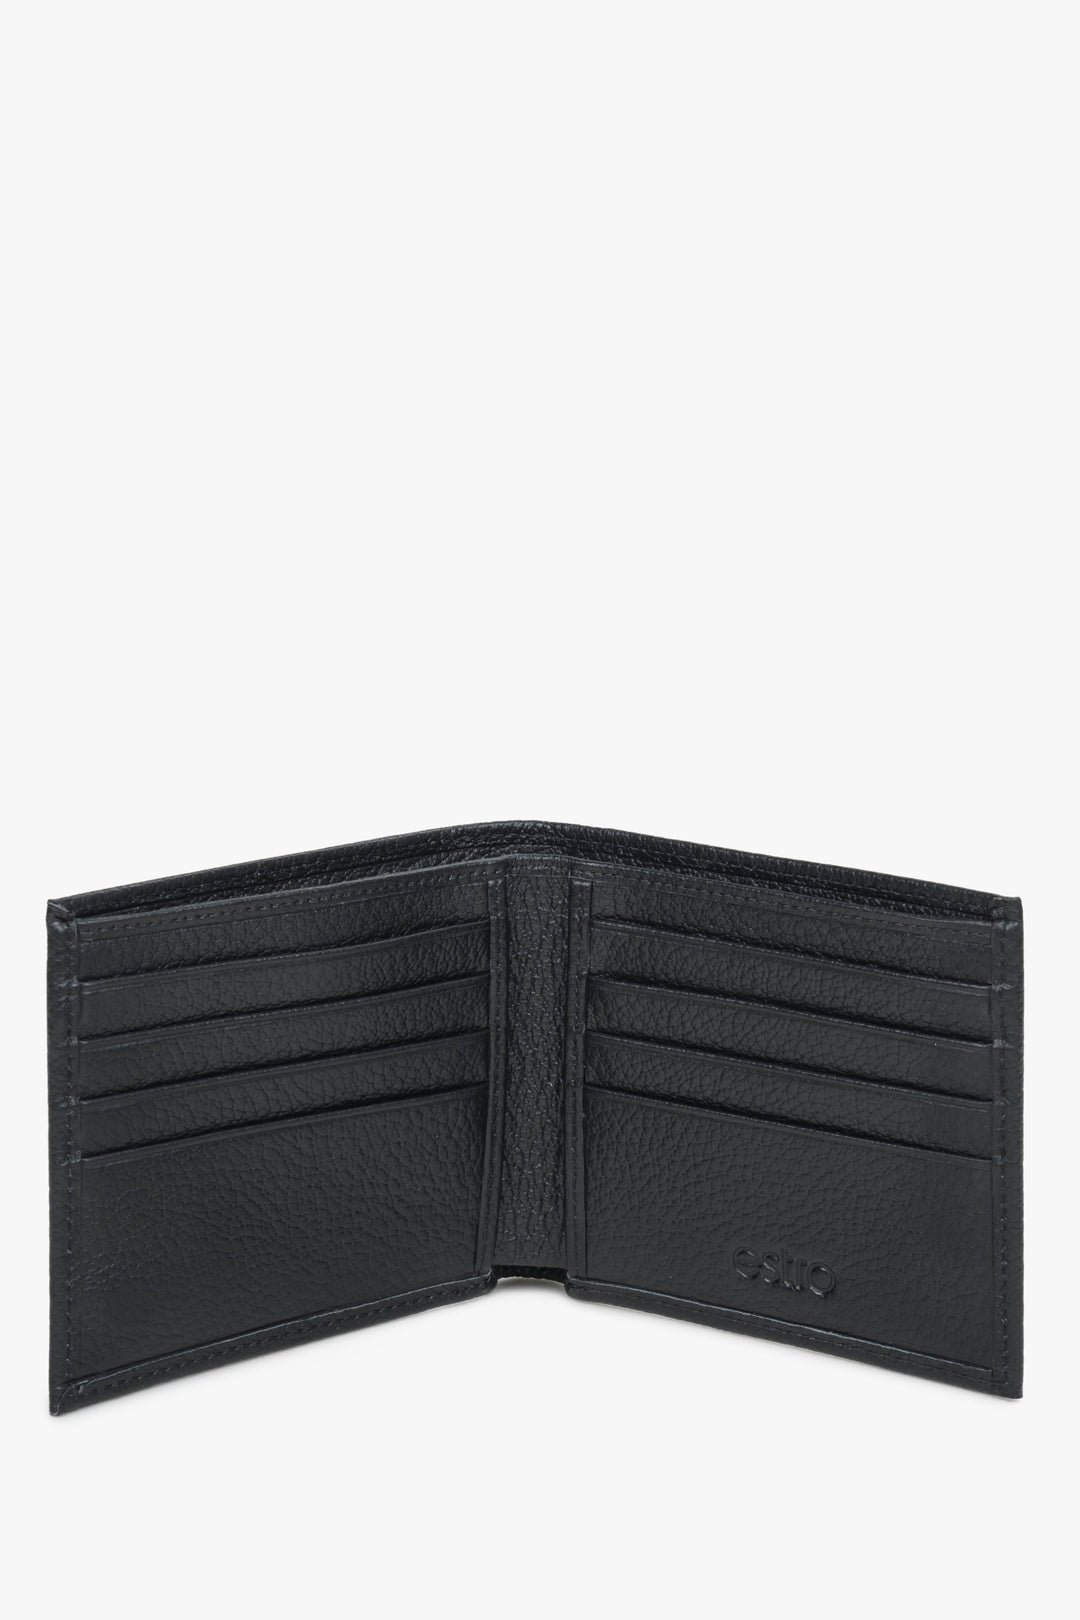 Skórzany kompaktowy portfel męski w kolorze czarnym - prezentacja wnętrza modelu.